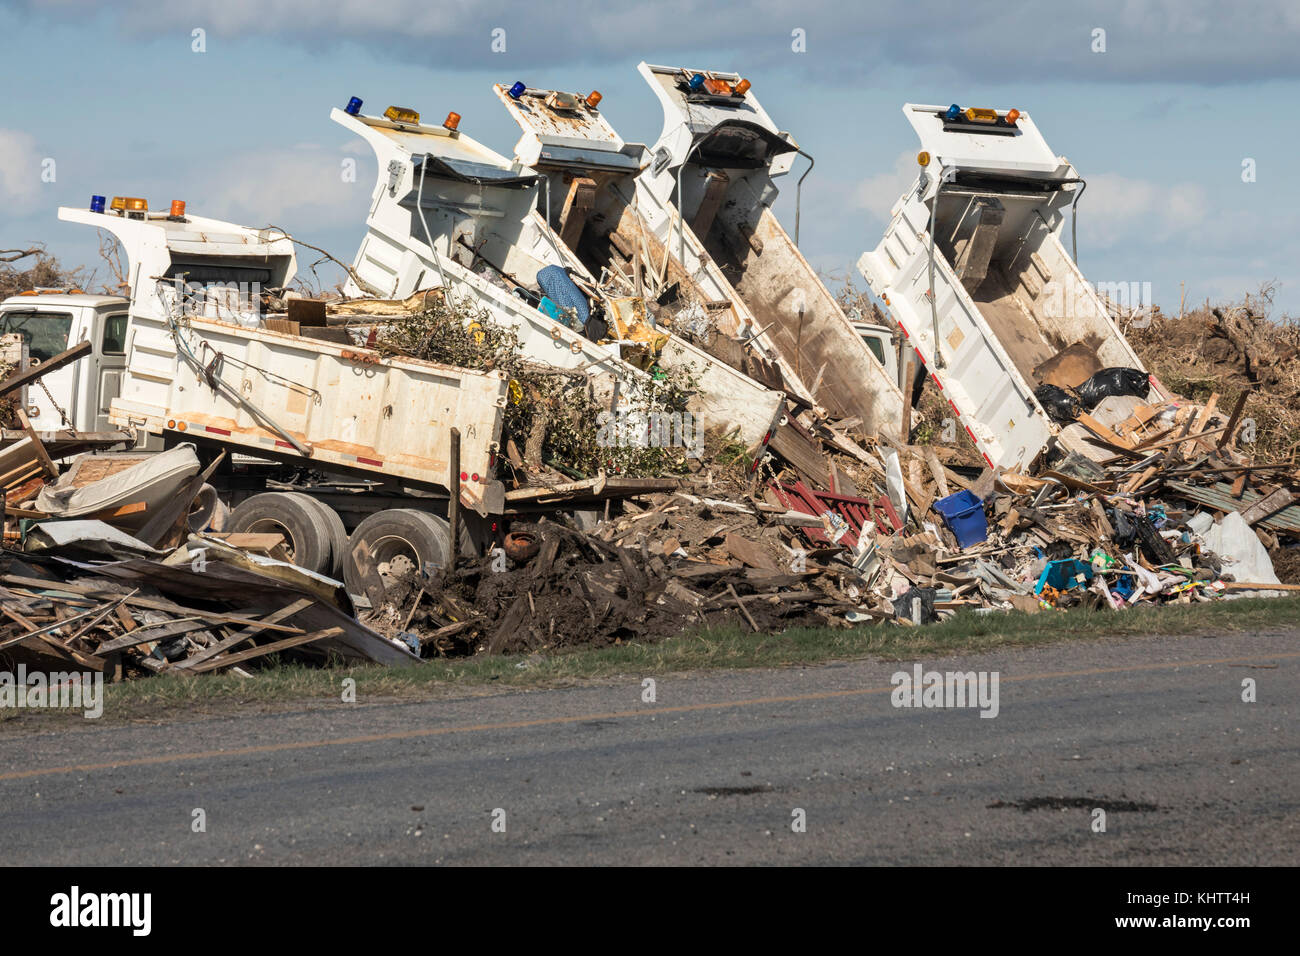 Rockport, Texas - Nutzfahrzeuge dump Rückstände aus der Hurrikan harvey Zerstörung in den Mittelstreifen der State Highway 35. Stockfoto